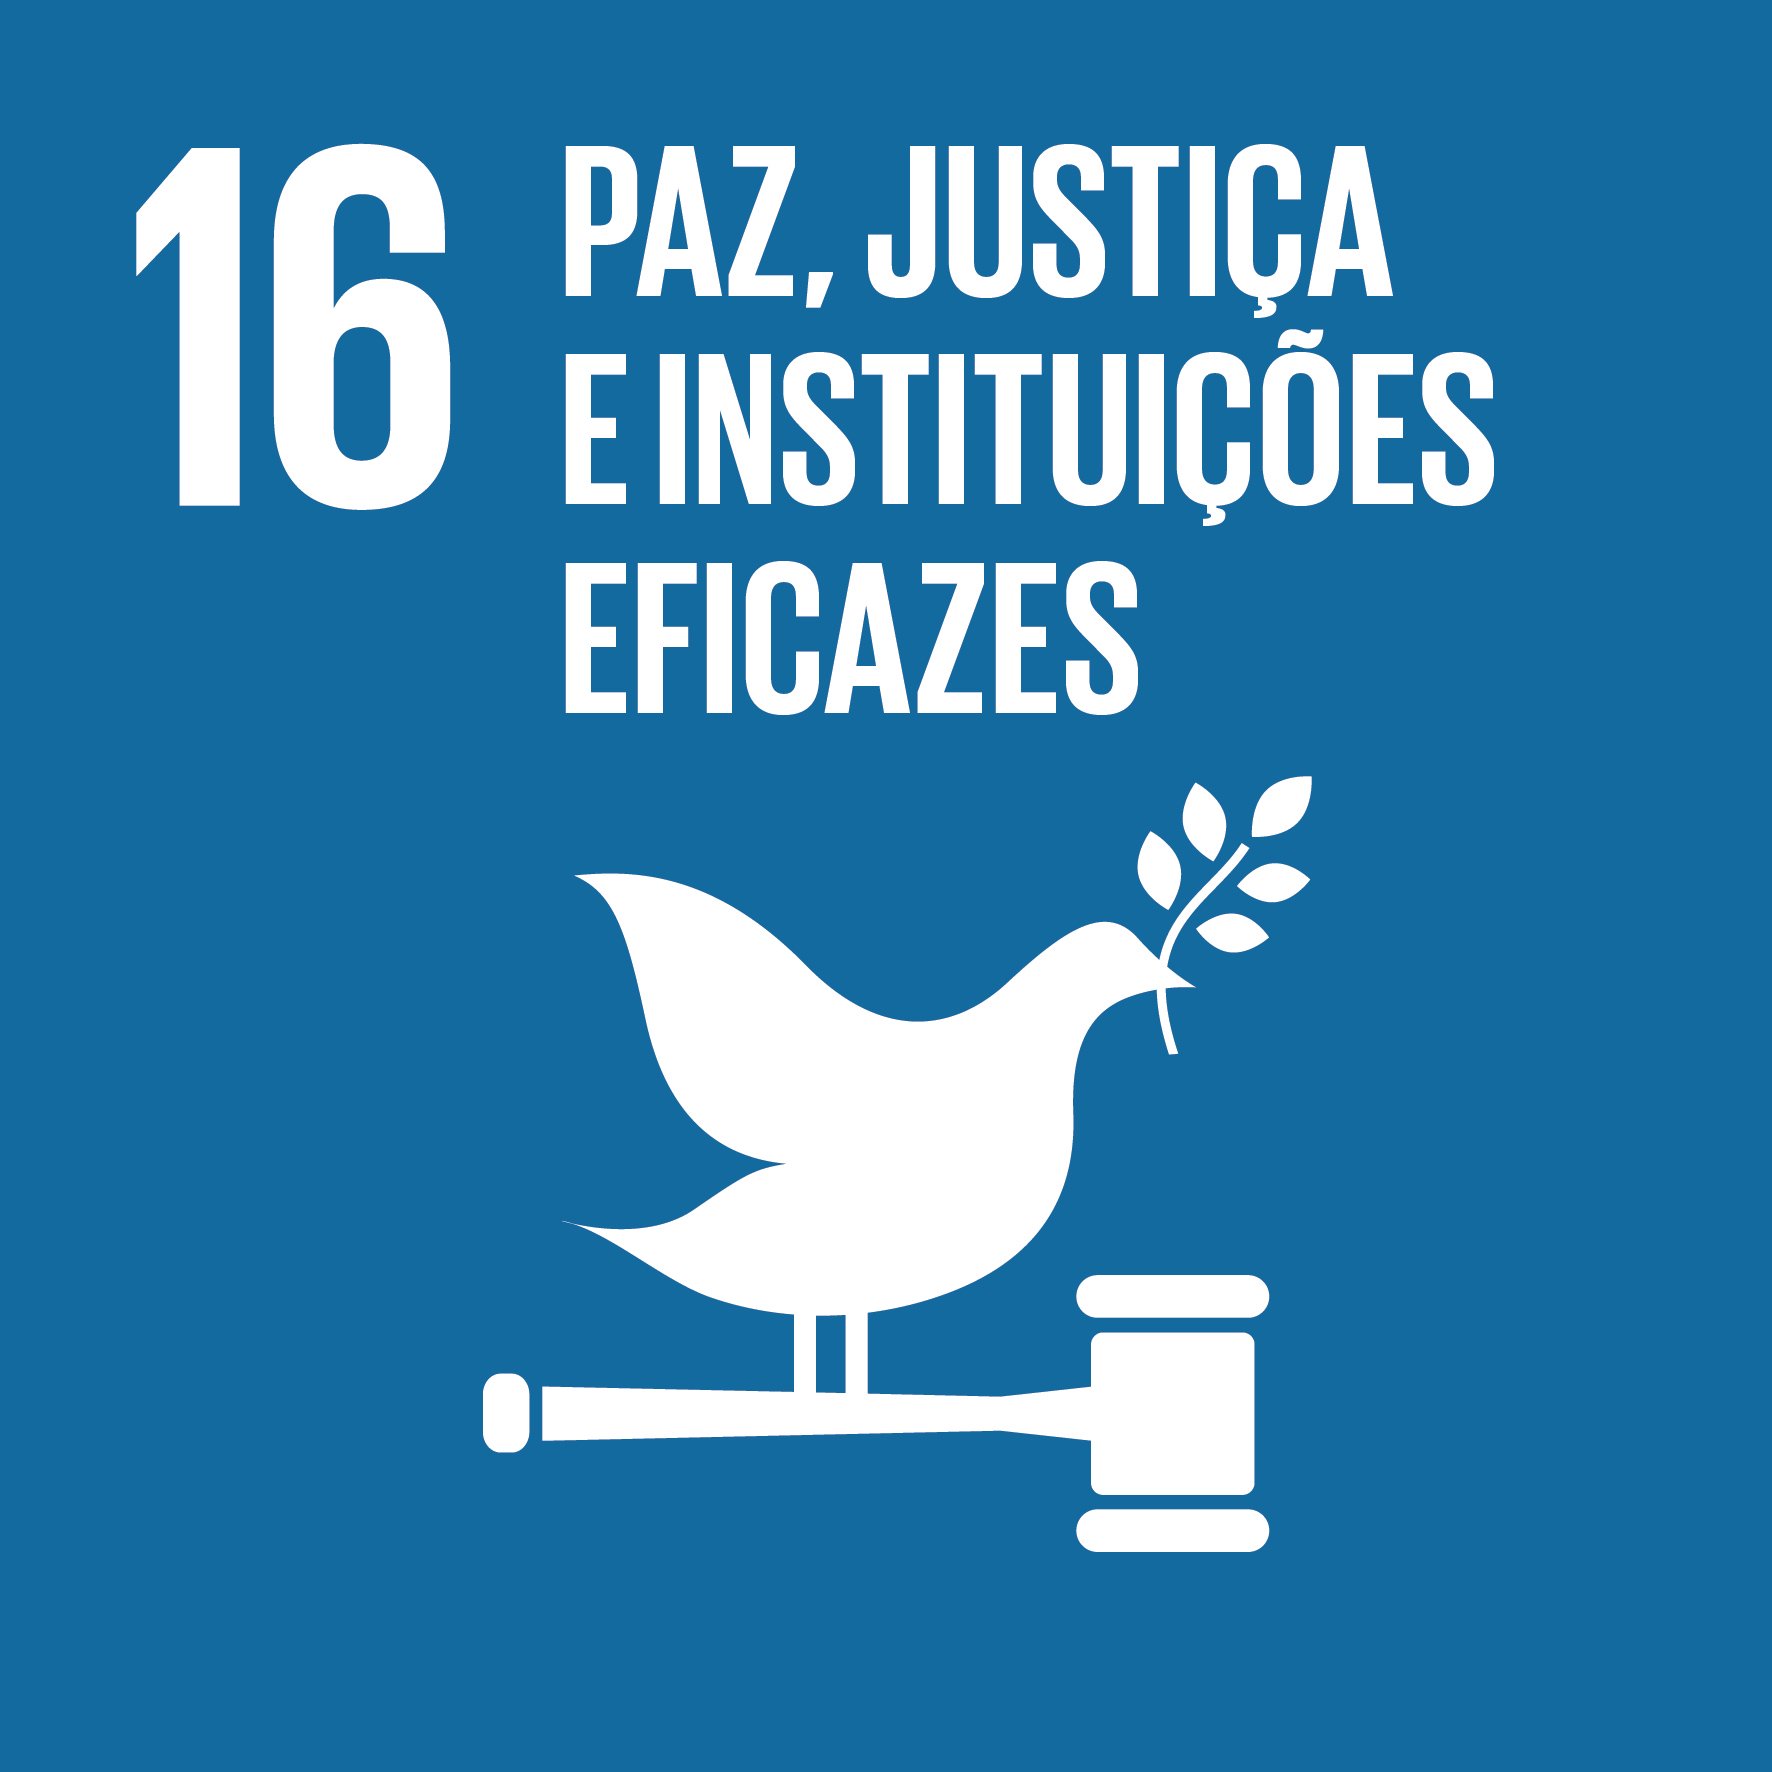 ODS 16 - Paz, Justiça e Instituições Eficazes